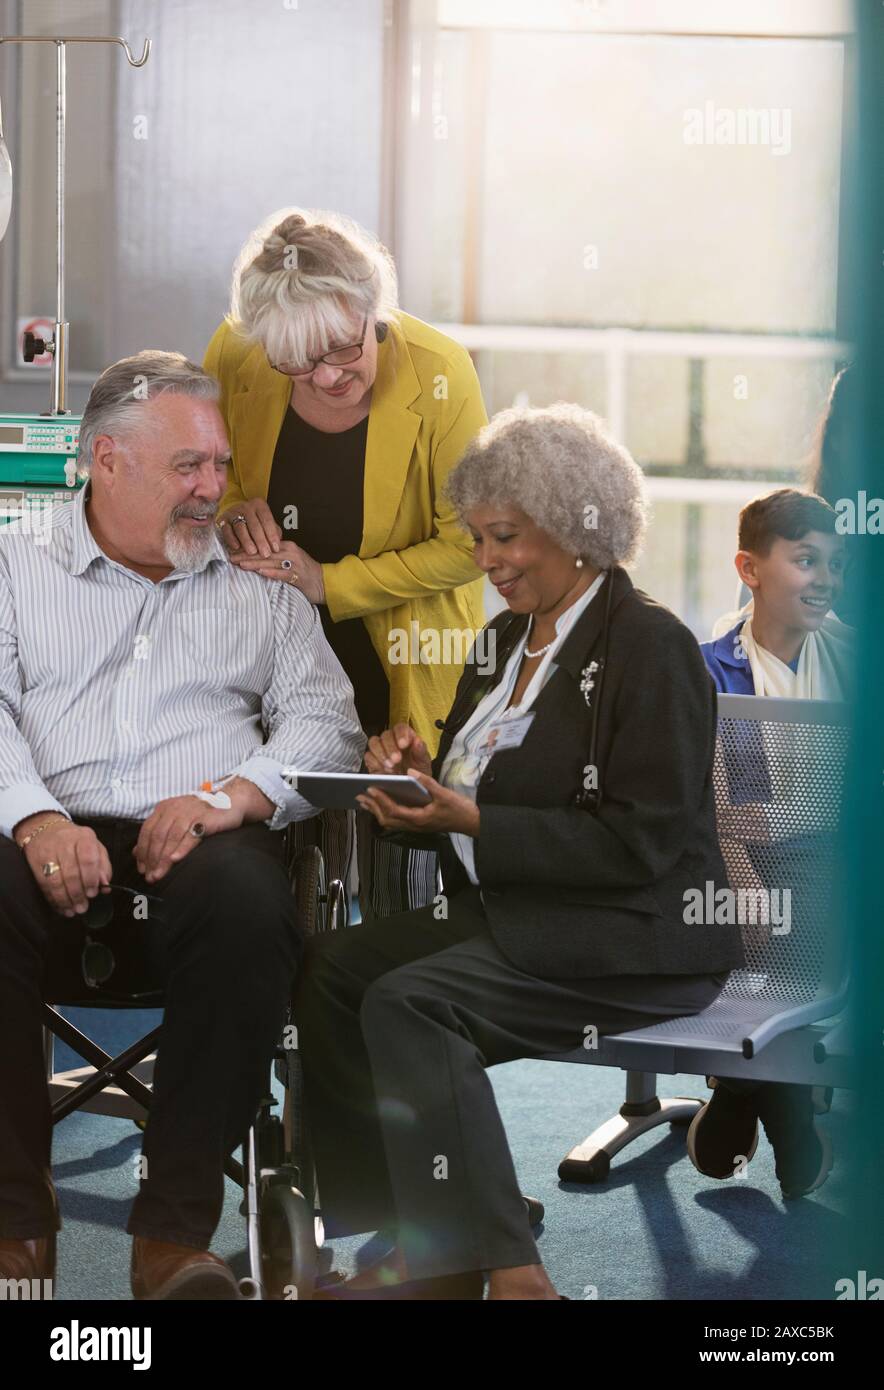 Médecin avec tablette numérique parlant à couple dans le hall de la clinique Banque D'Images